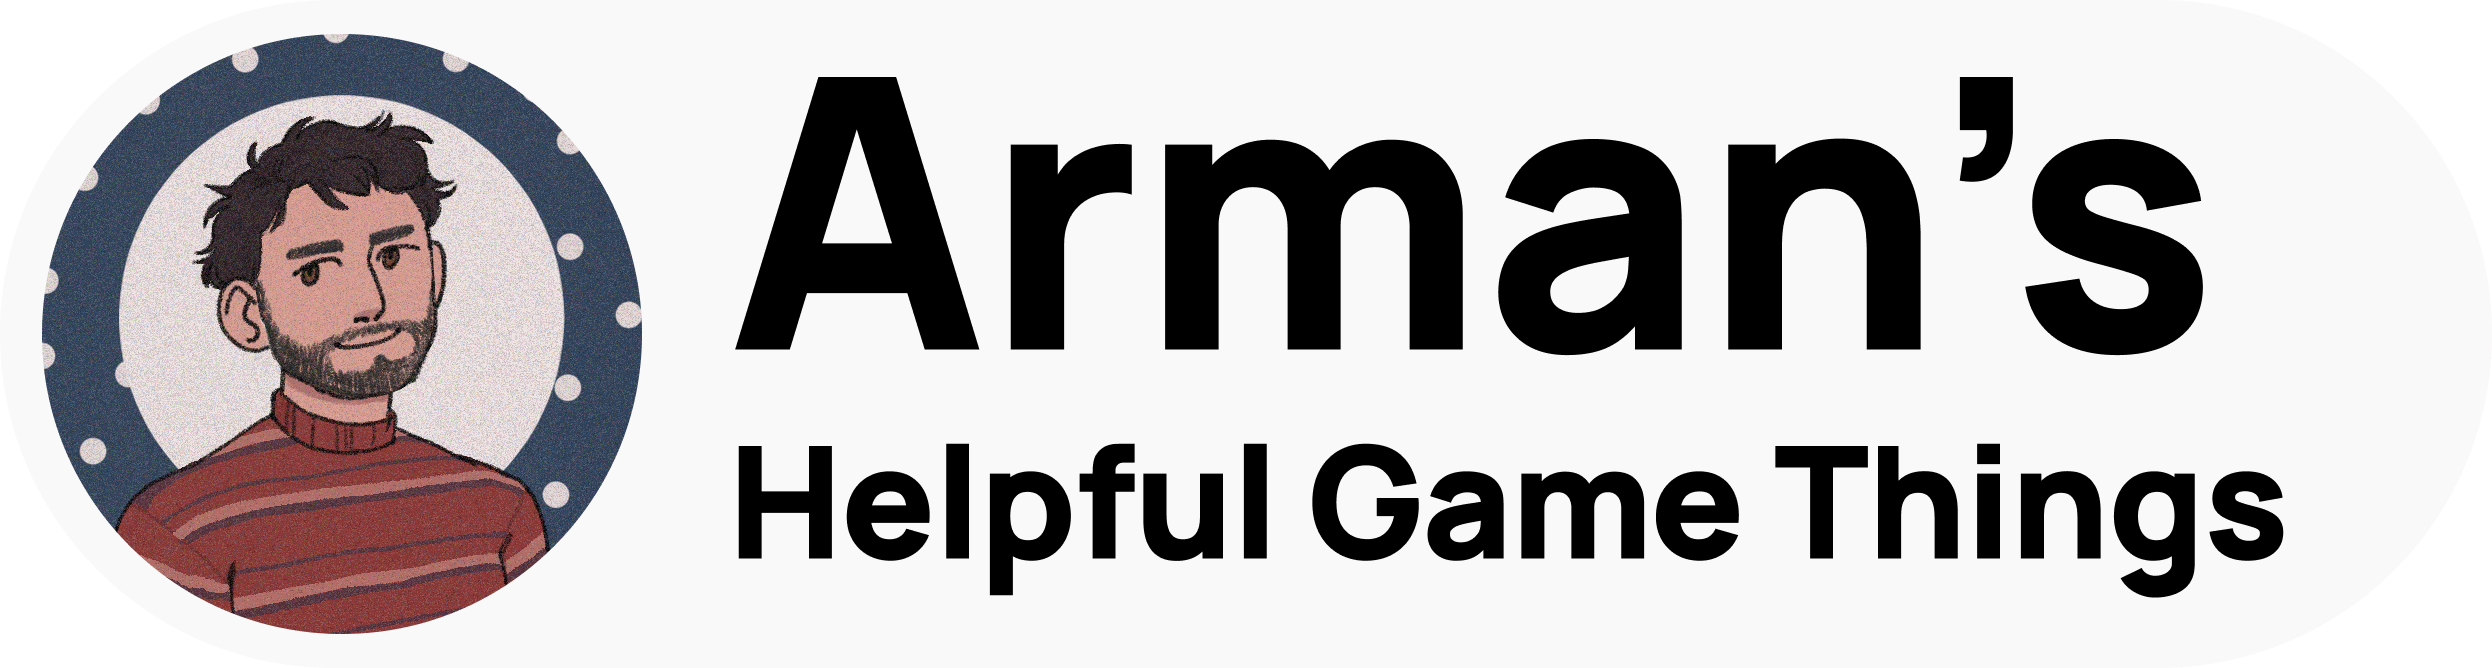 Arman's Helpful Game Things